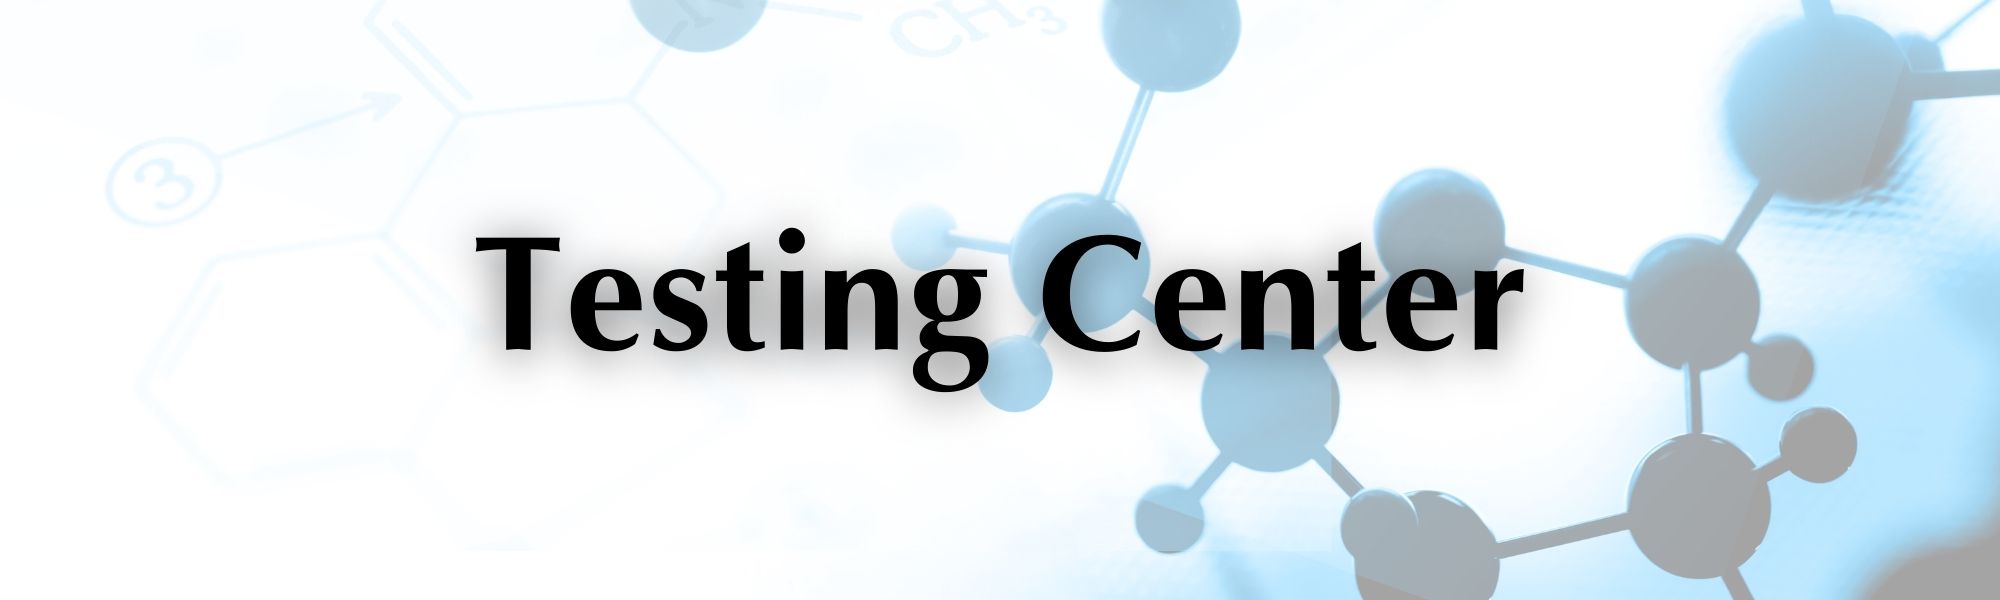 Testing Center header